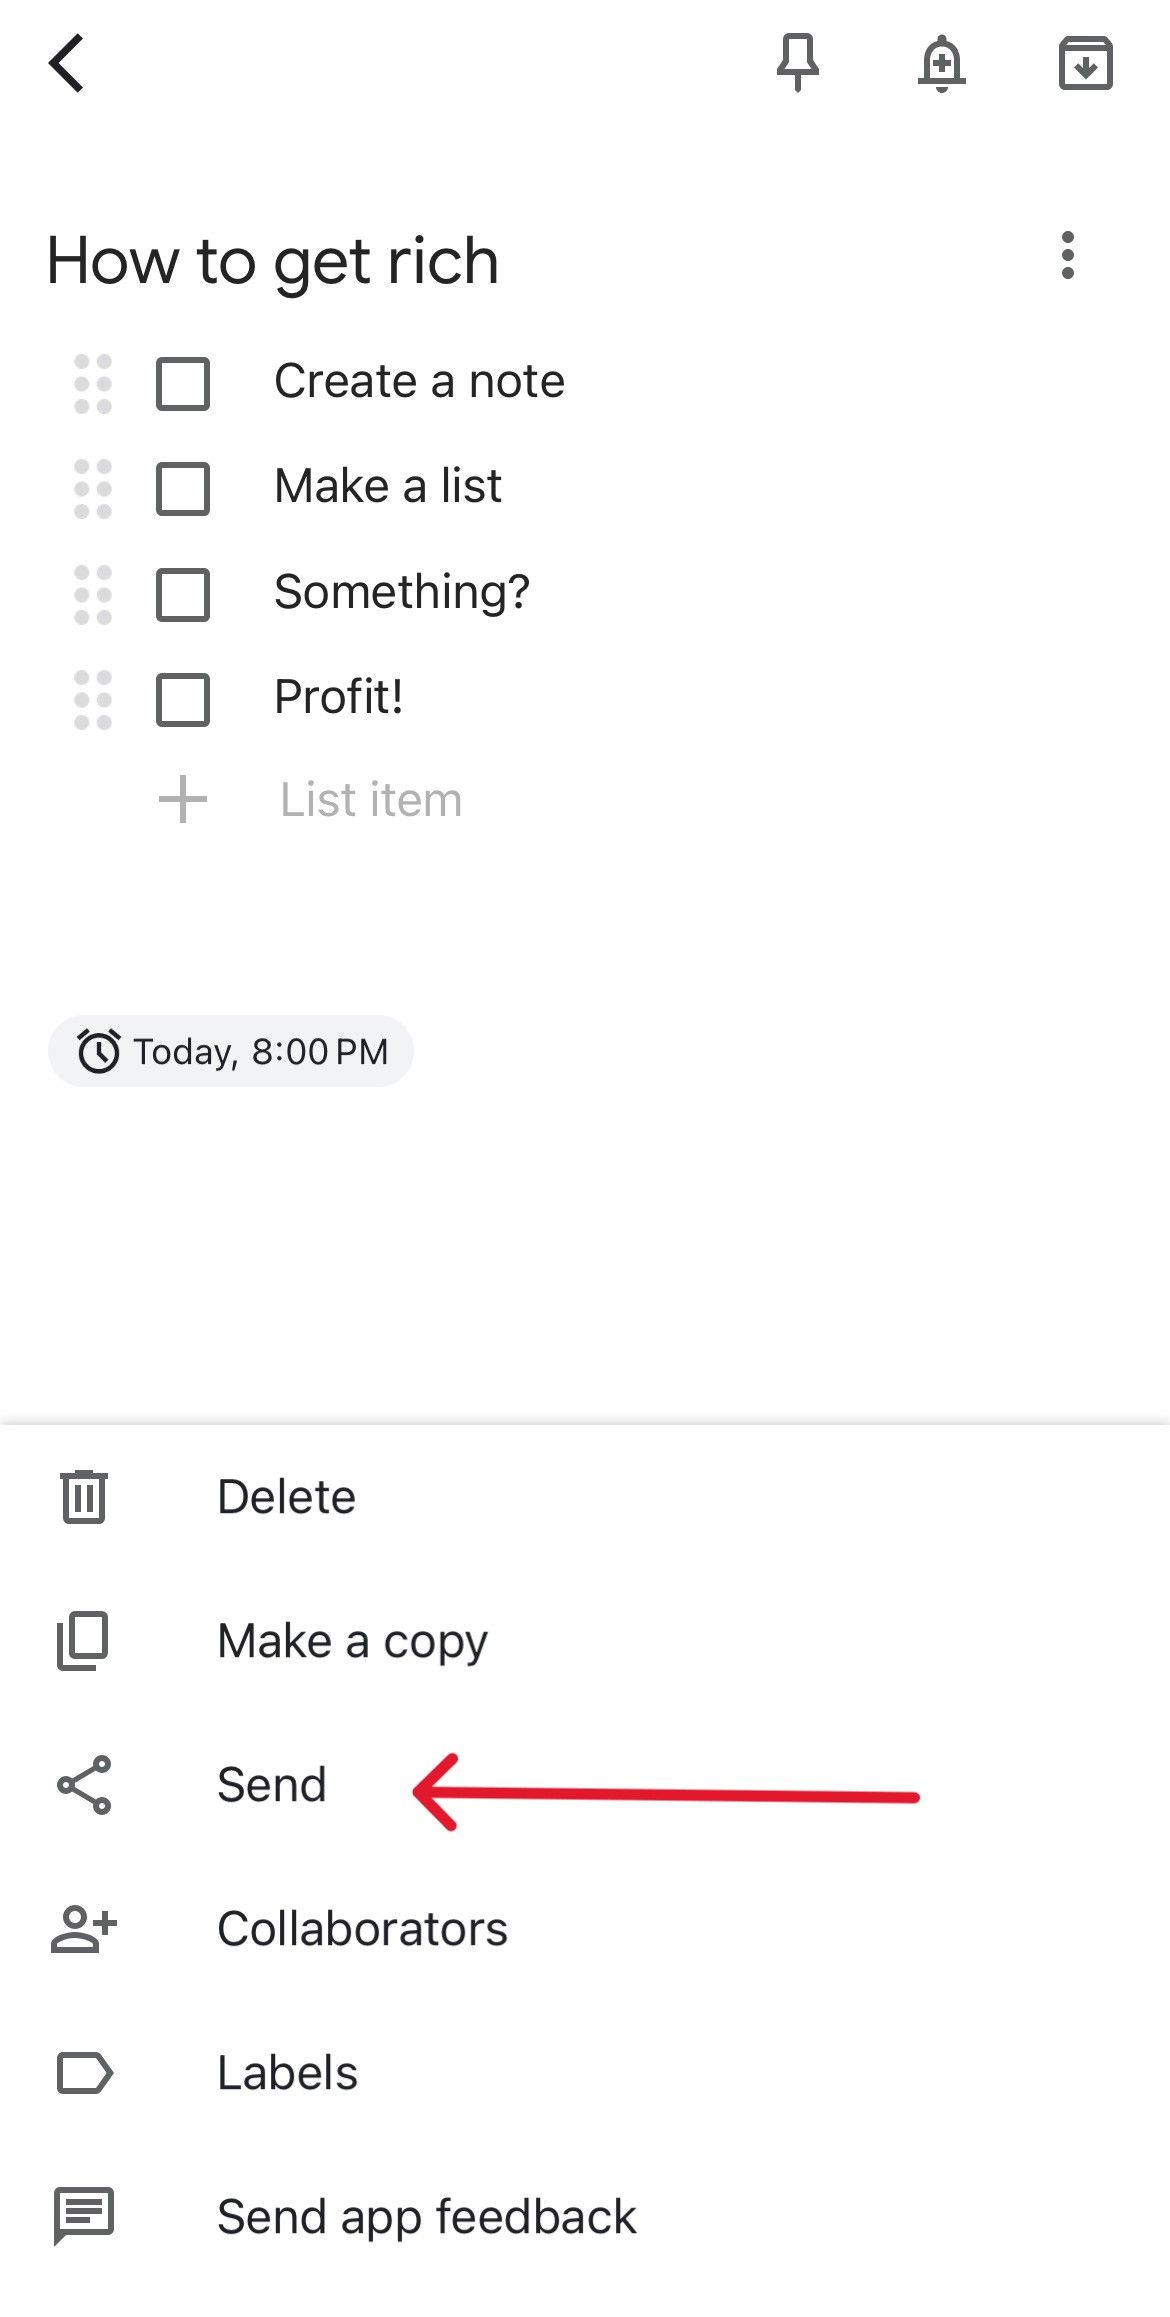 Menu de notas do Google Keep com uma seta vermelha apontando para a opção Enviar.